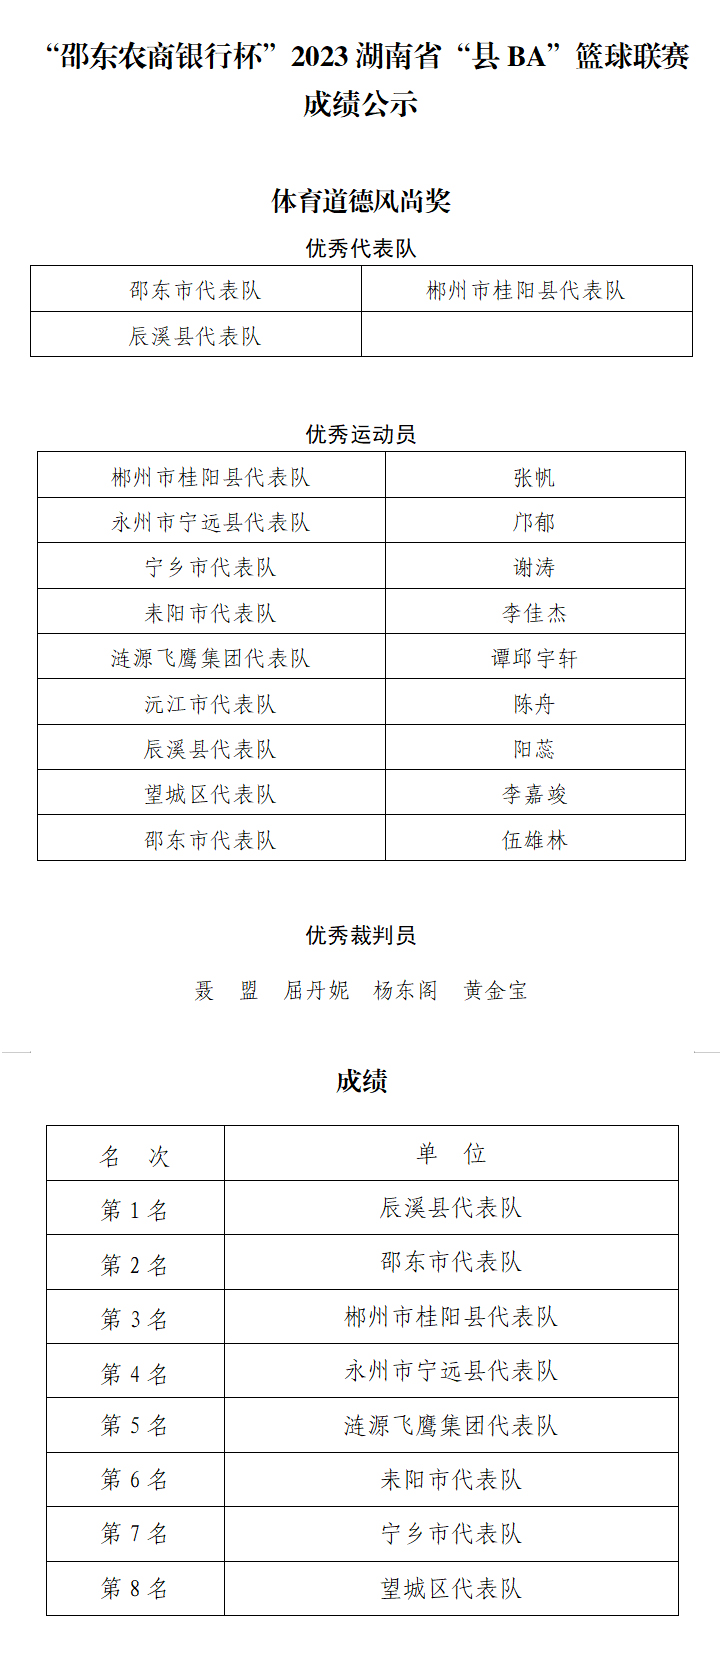 第 4 个：辰溪队夺冠！2023湖南省“县BA”篮球联赛闭幕